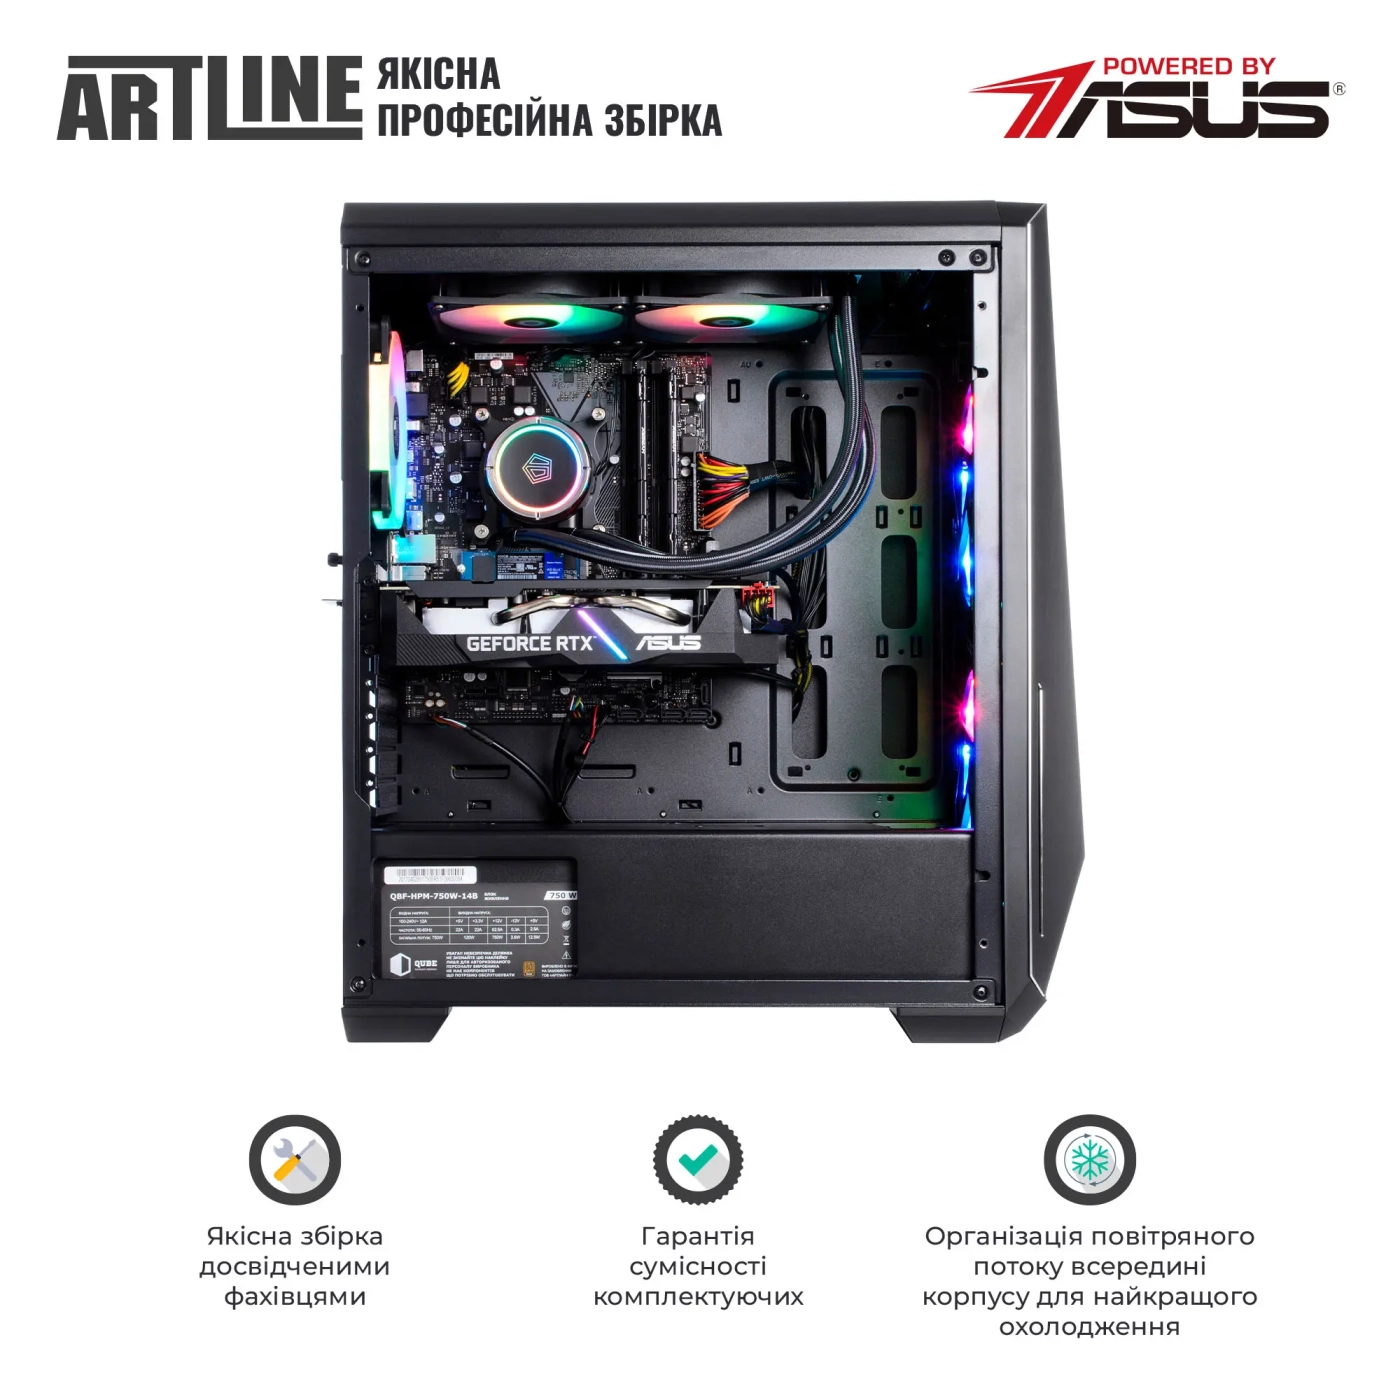 Купить Компьютер ARTLINE Gaming X91v52 - фото 7